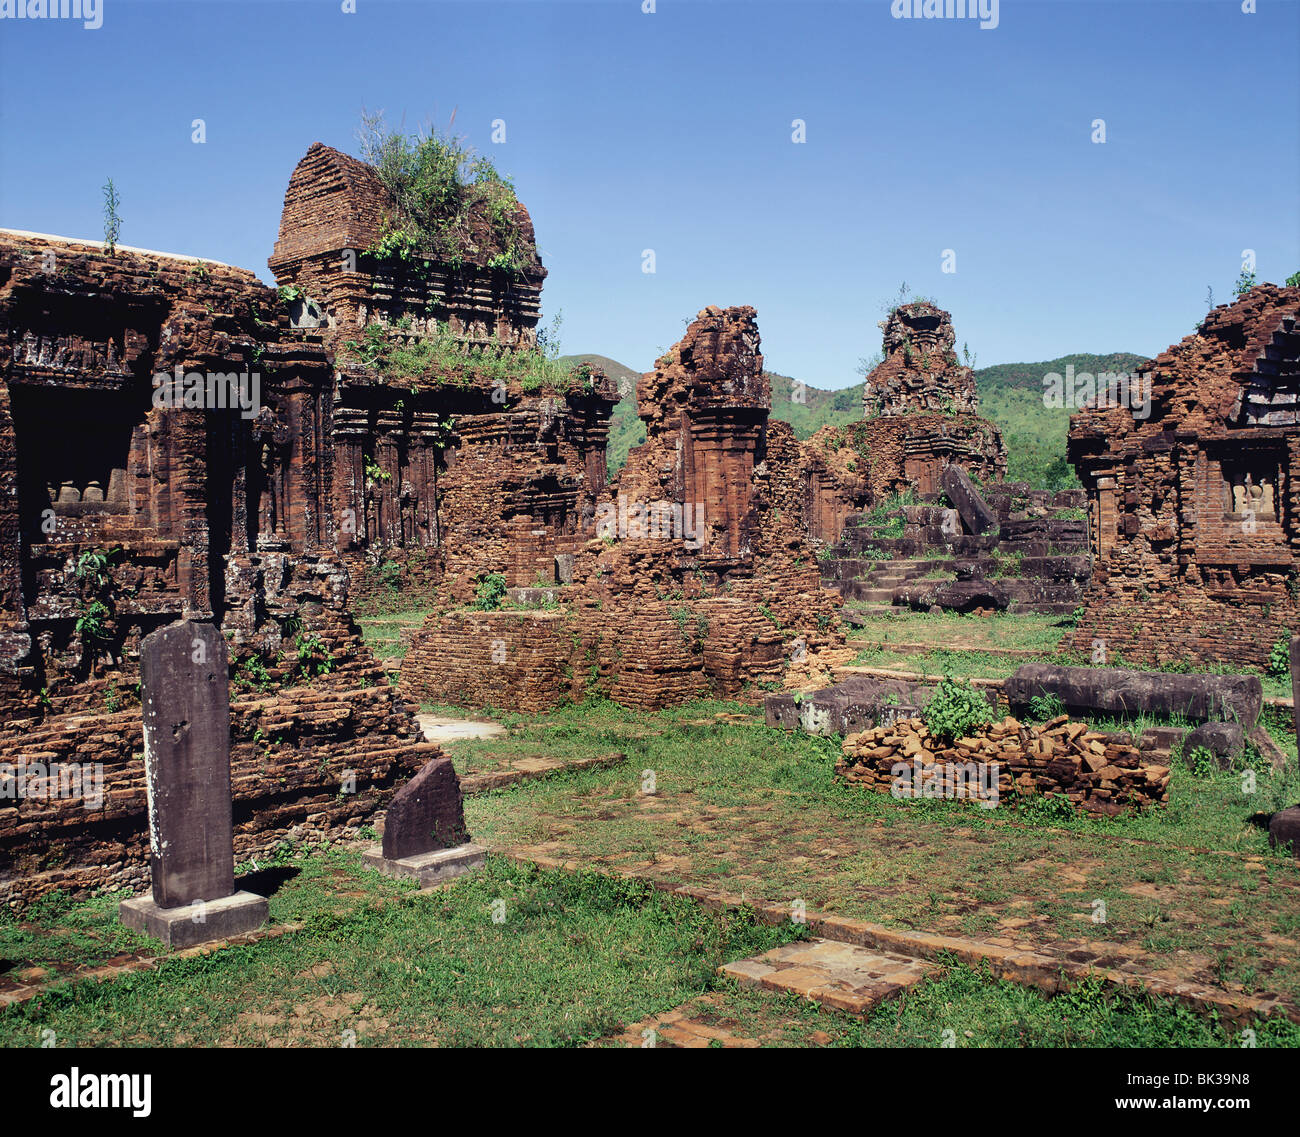 Ruines du sanctuaire Cham de My Son, datant du 7e au 10e siècles. Le Vietnam, l'Indochine, l'Asie du Sud-Est, Asie Banque D'Images